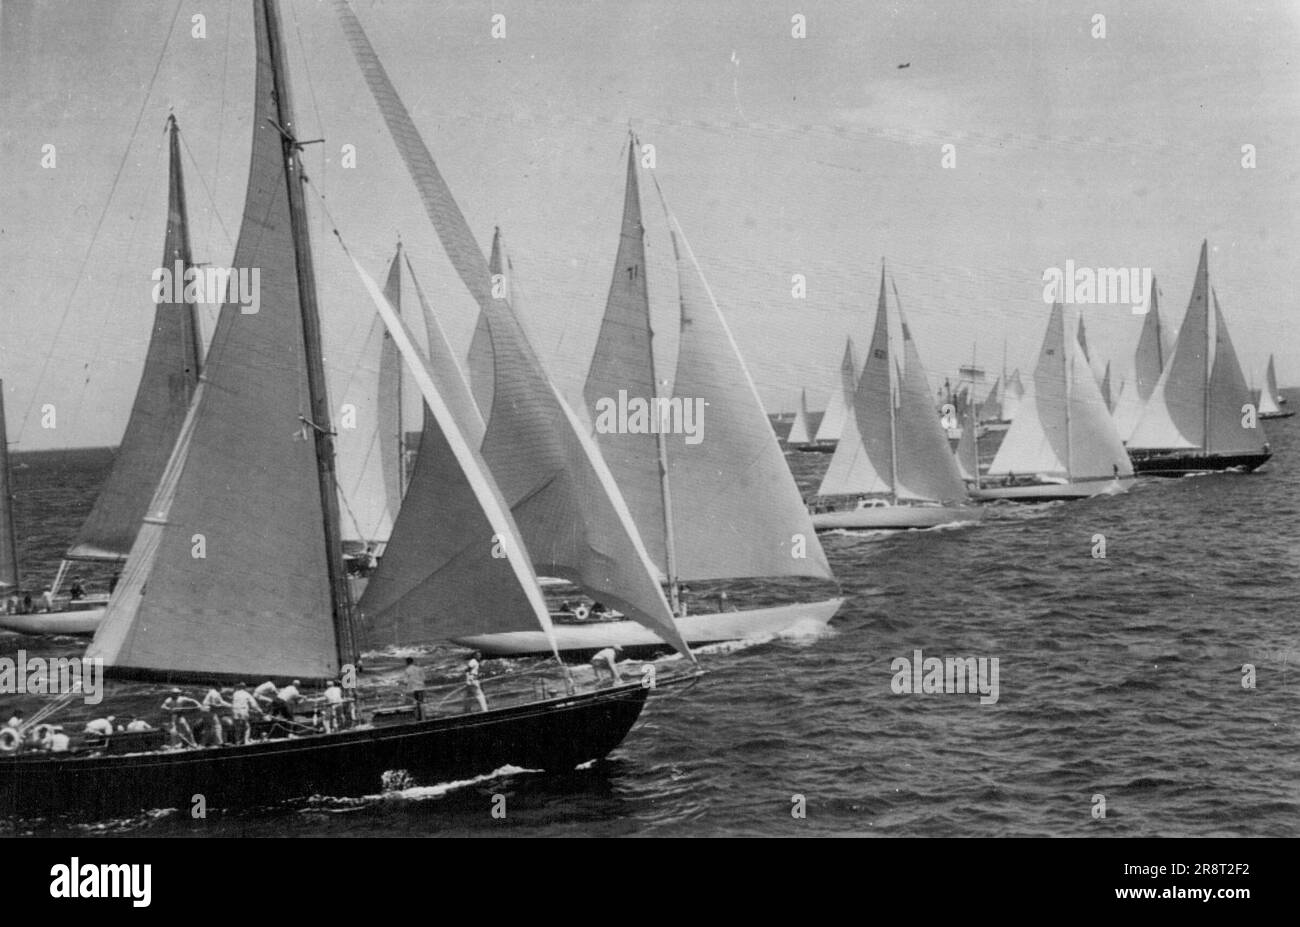 Nach Bermuda - Klasse 'A', die größten Boote der 17., 235-Meilen-Rennen auf dem offenen Meer nach Bermuda, überqueren heute hier die Startlinie bei den besten Wetterbedingungen. Eine Rekordflotte von 54 kleinen, aber seetauglichen Segelbooten startete das Rennen. 18. Juni 1950. (Foto von AP Wirephoto) Stockfoto